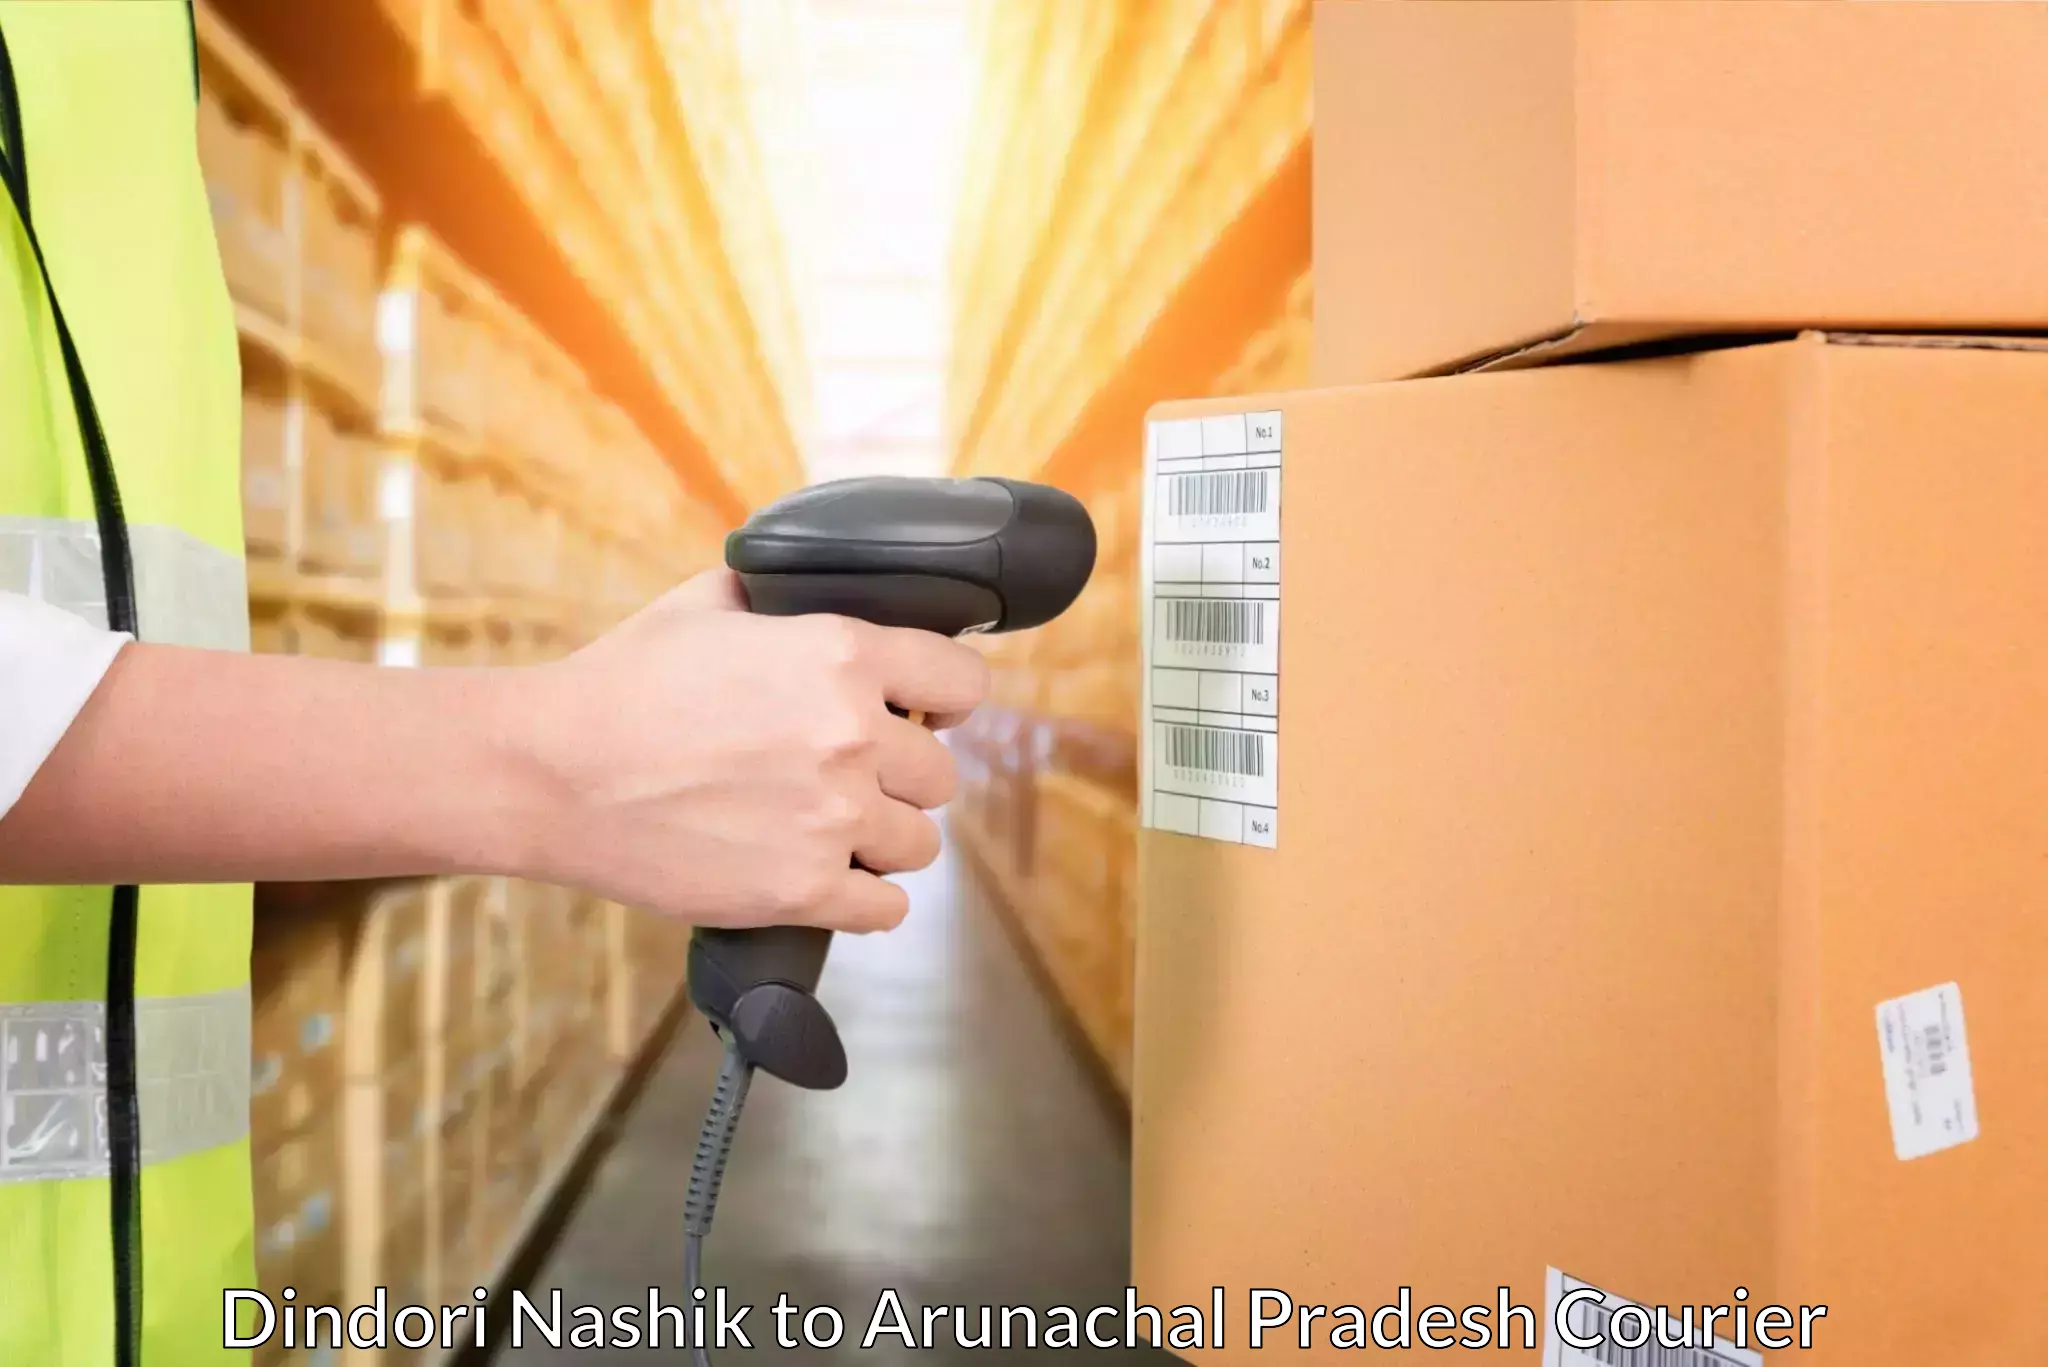 Efficient logistics management Dindori Nashik to Basar